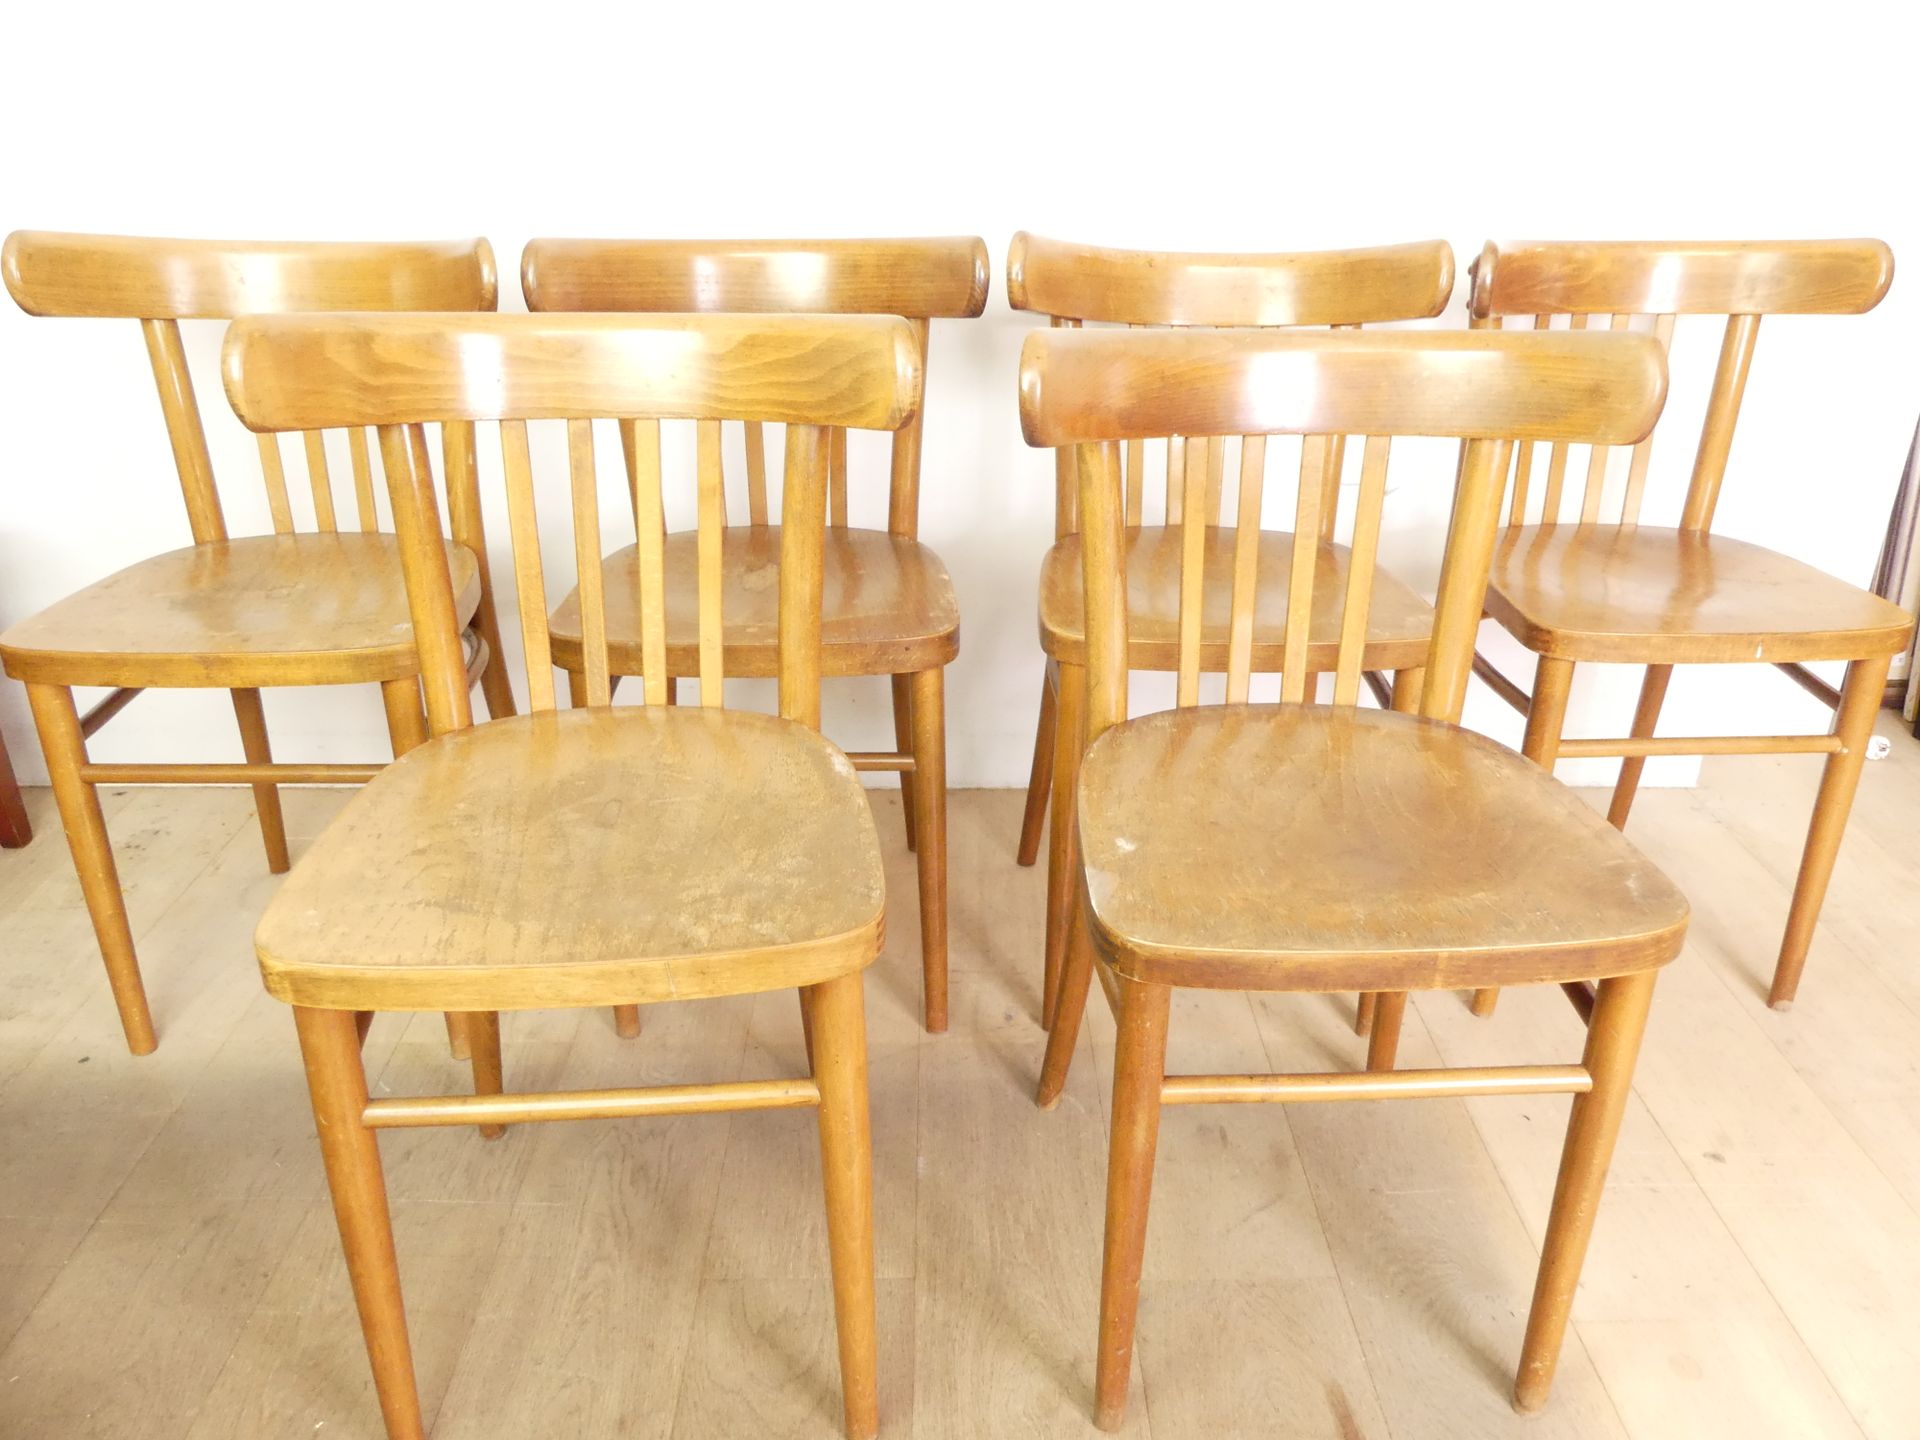 Null 6 sillas de madera al estilo de Baumann, mediados del siglo XX